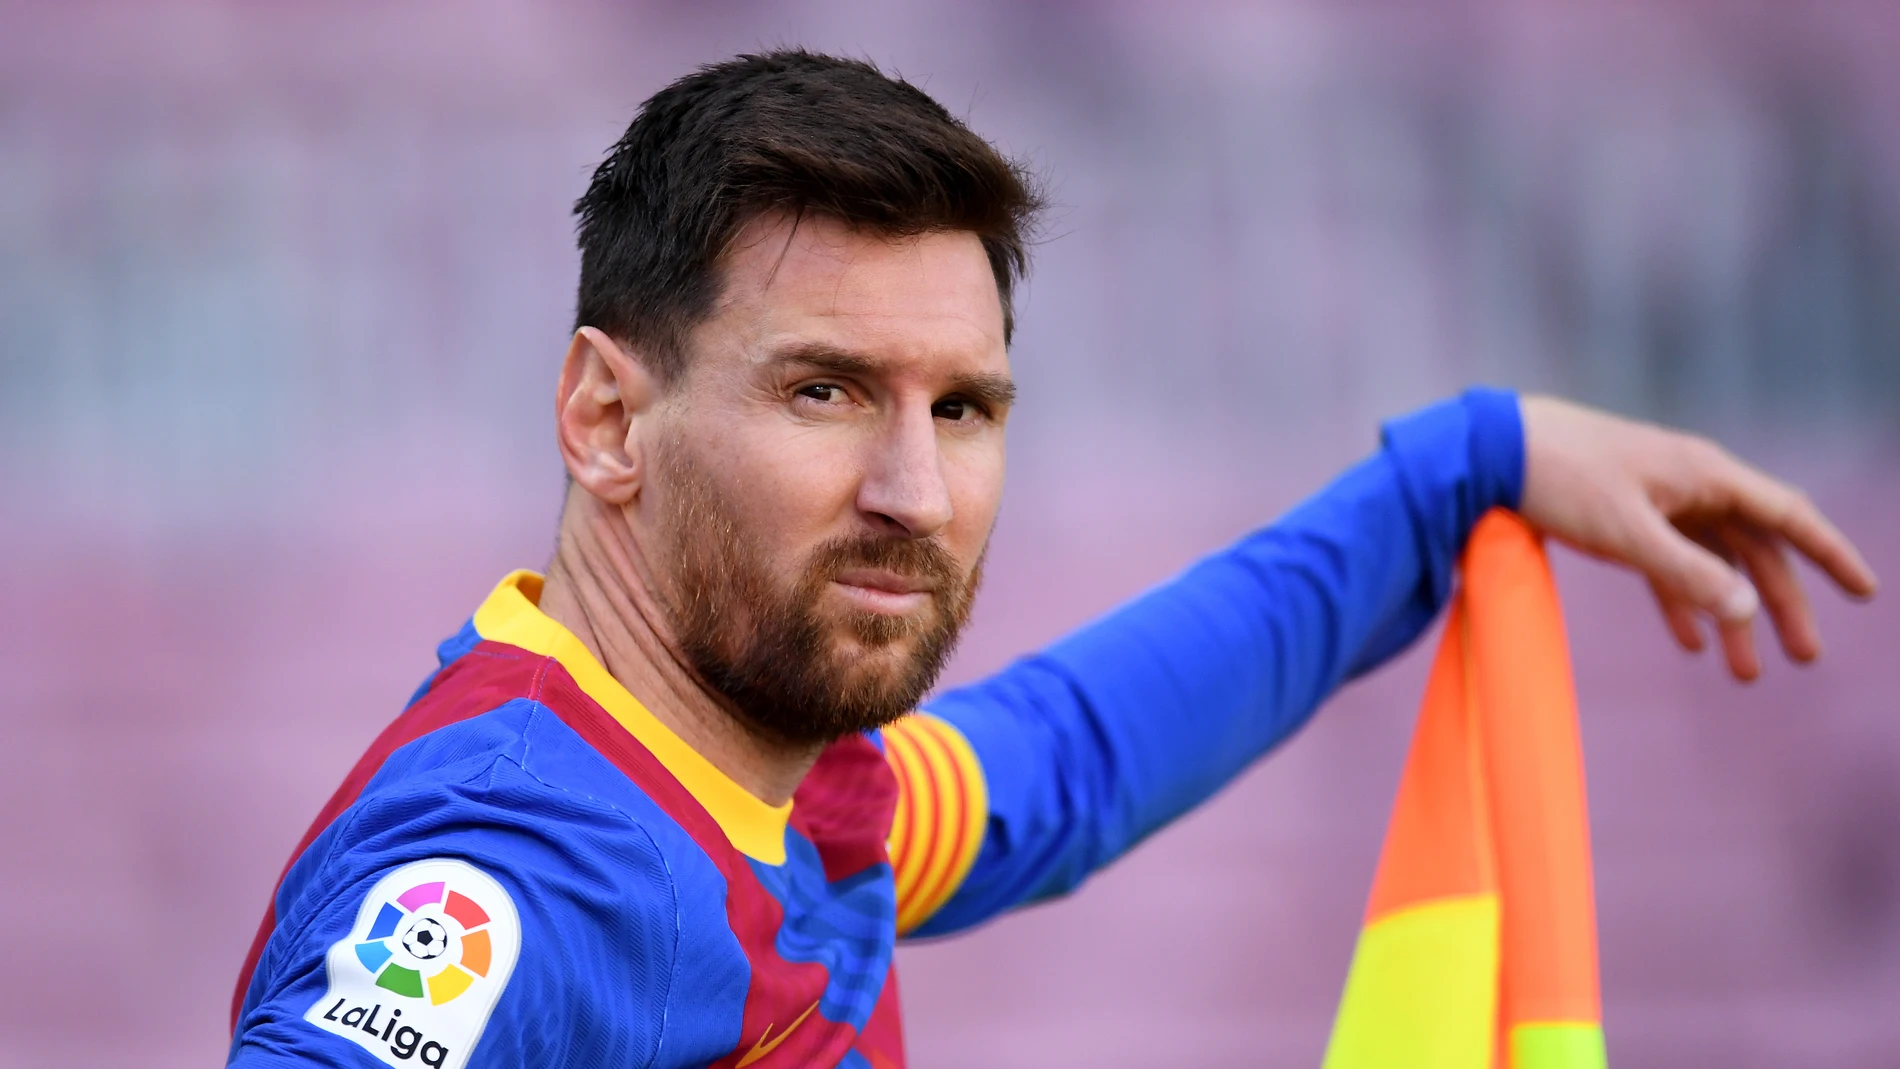 Leo Messi queda libre hoy al terminar su contrato con el Barcelona... si Laporta no lo impide